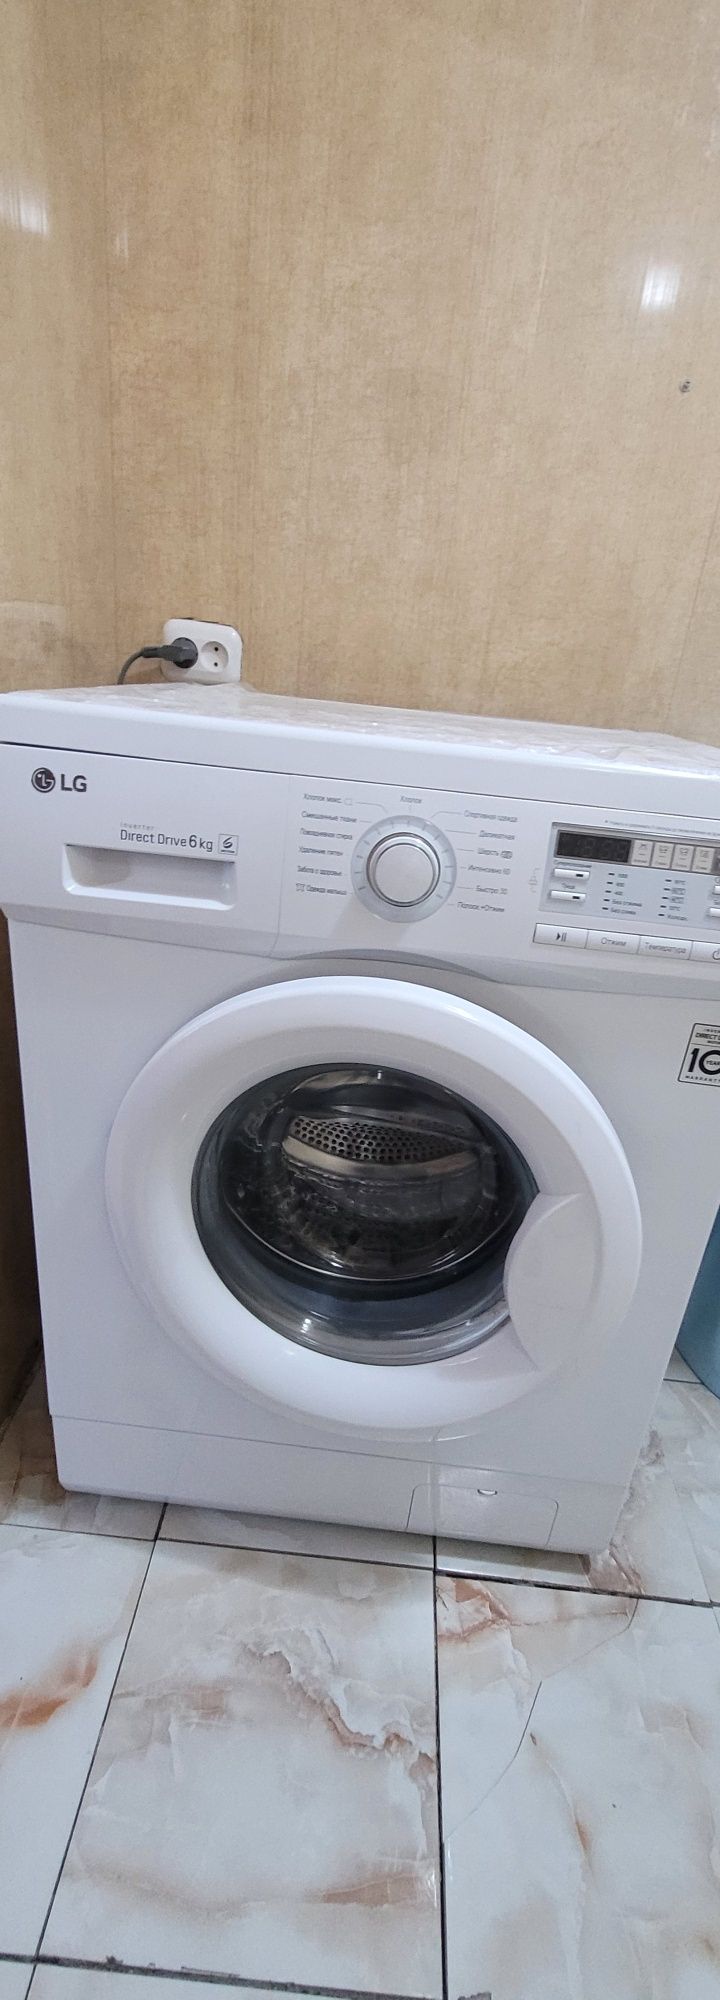 Срочно недорого продаётся стиральная машина LG